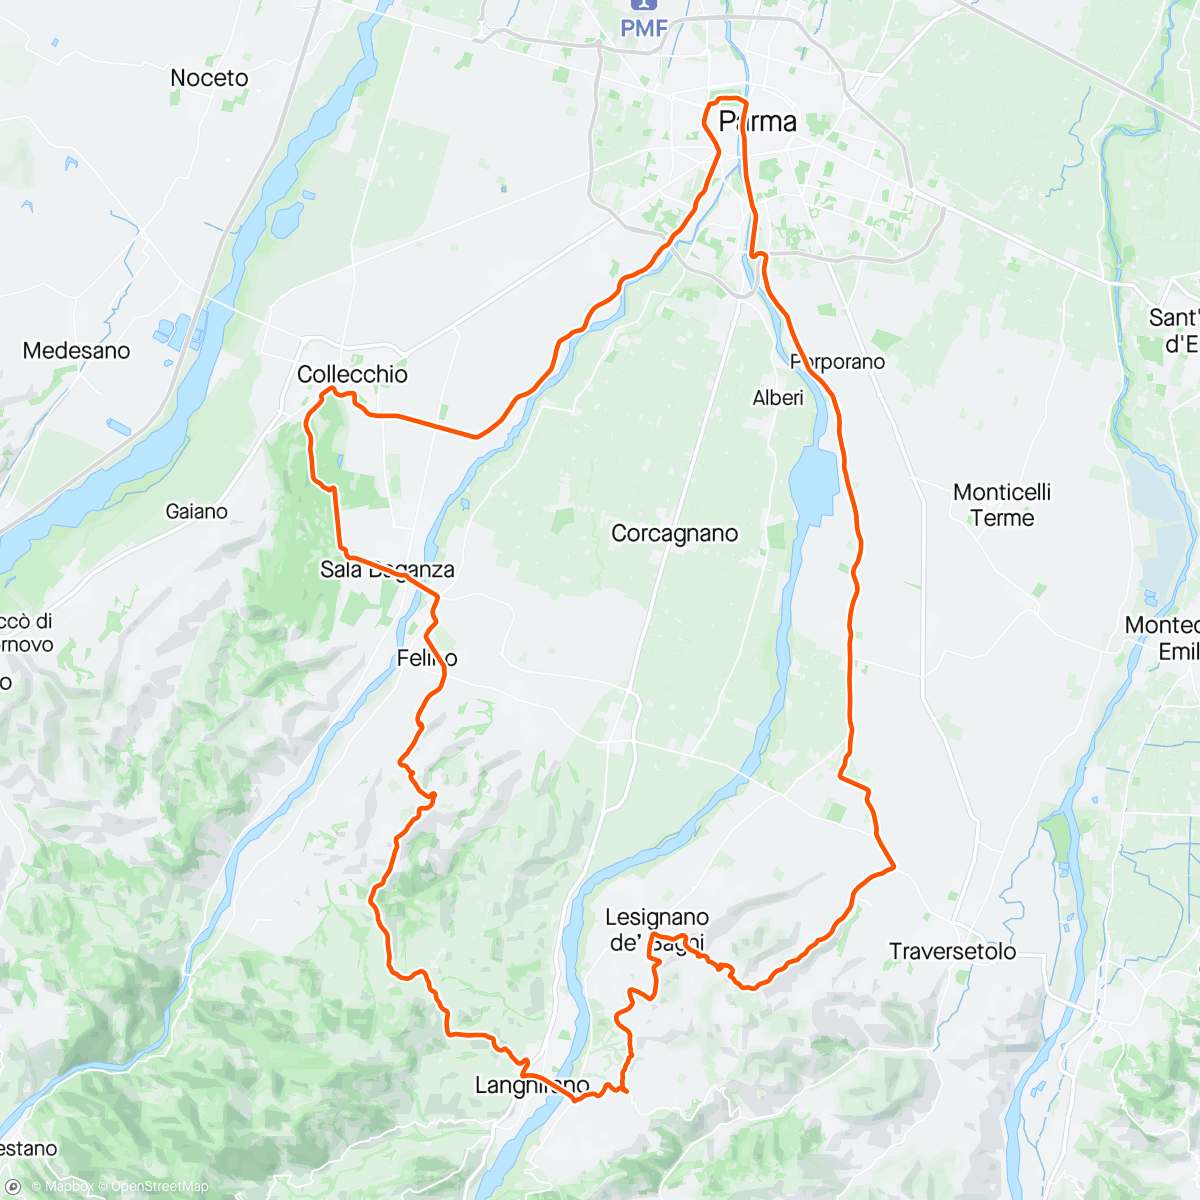 「L’Etape Parma by Tour de France」活動的地圖